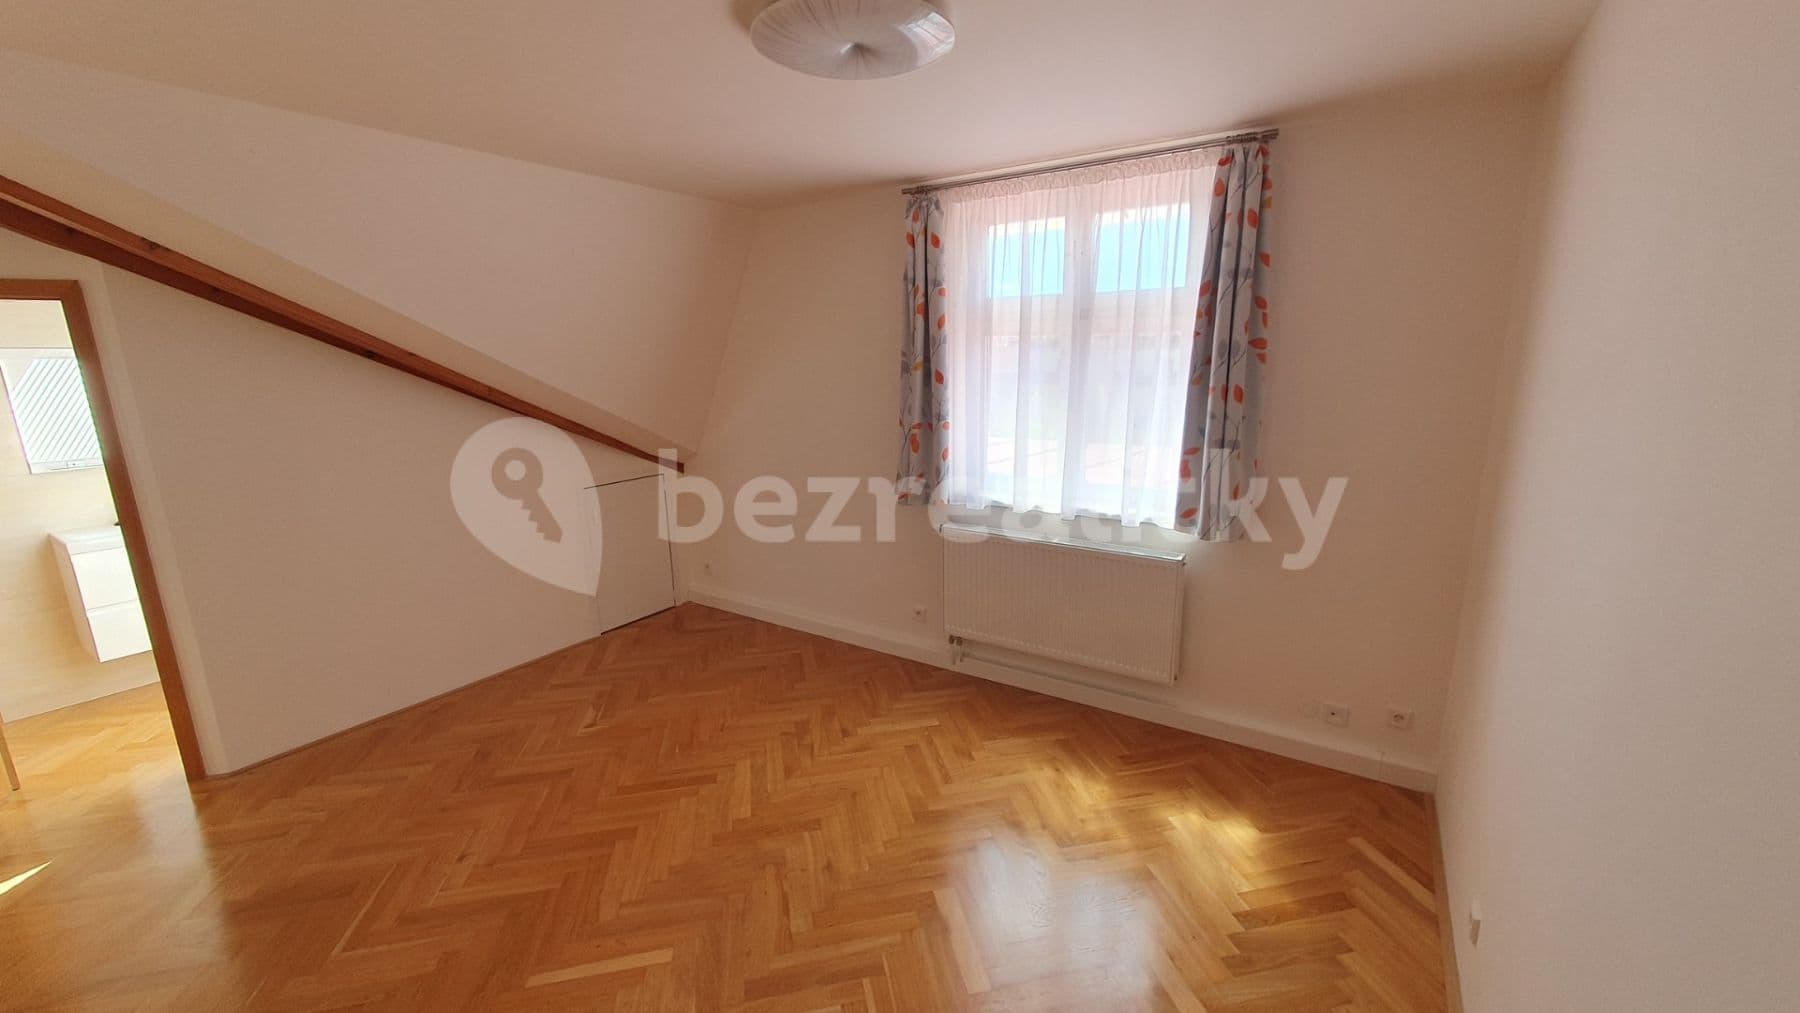 3 bedroom with open-plan kitchen flat to rent, 130 m², Blodkova, Prague, Prague